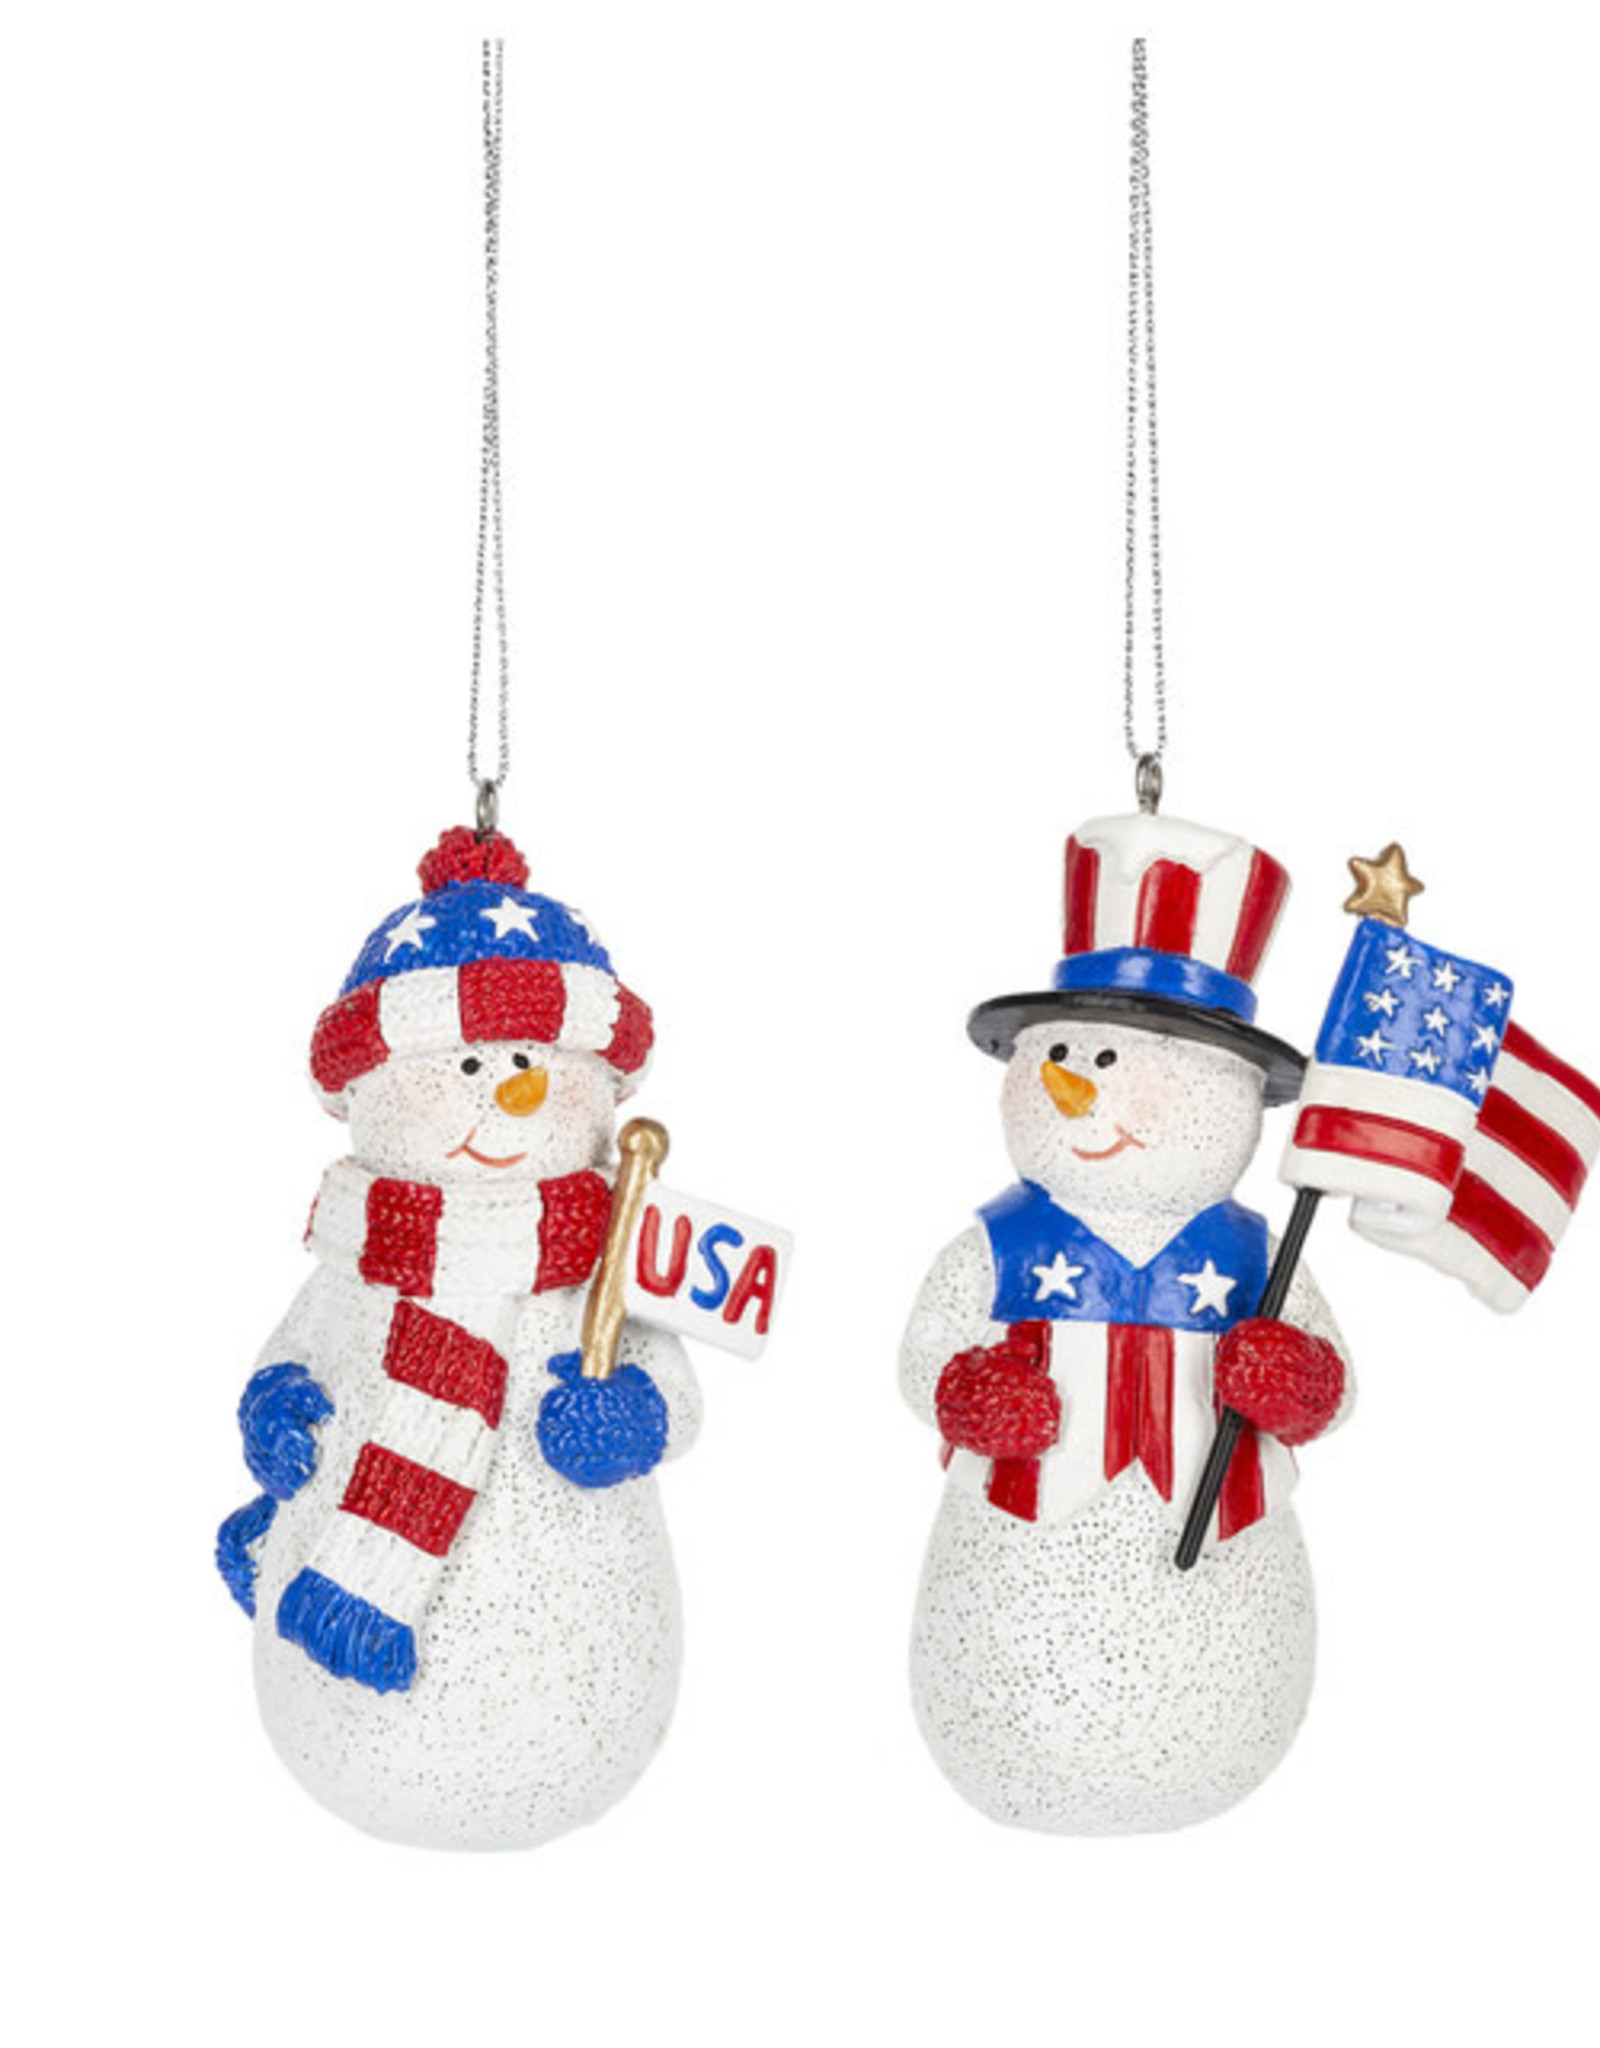 Ganz Patriotic Snowman Ornament